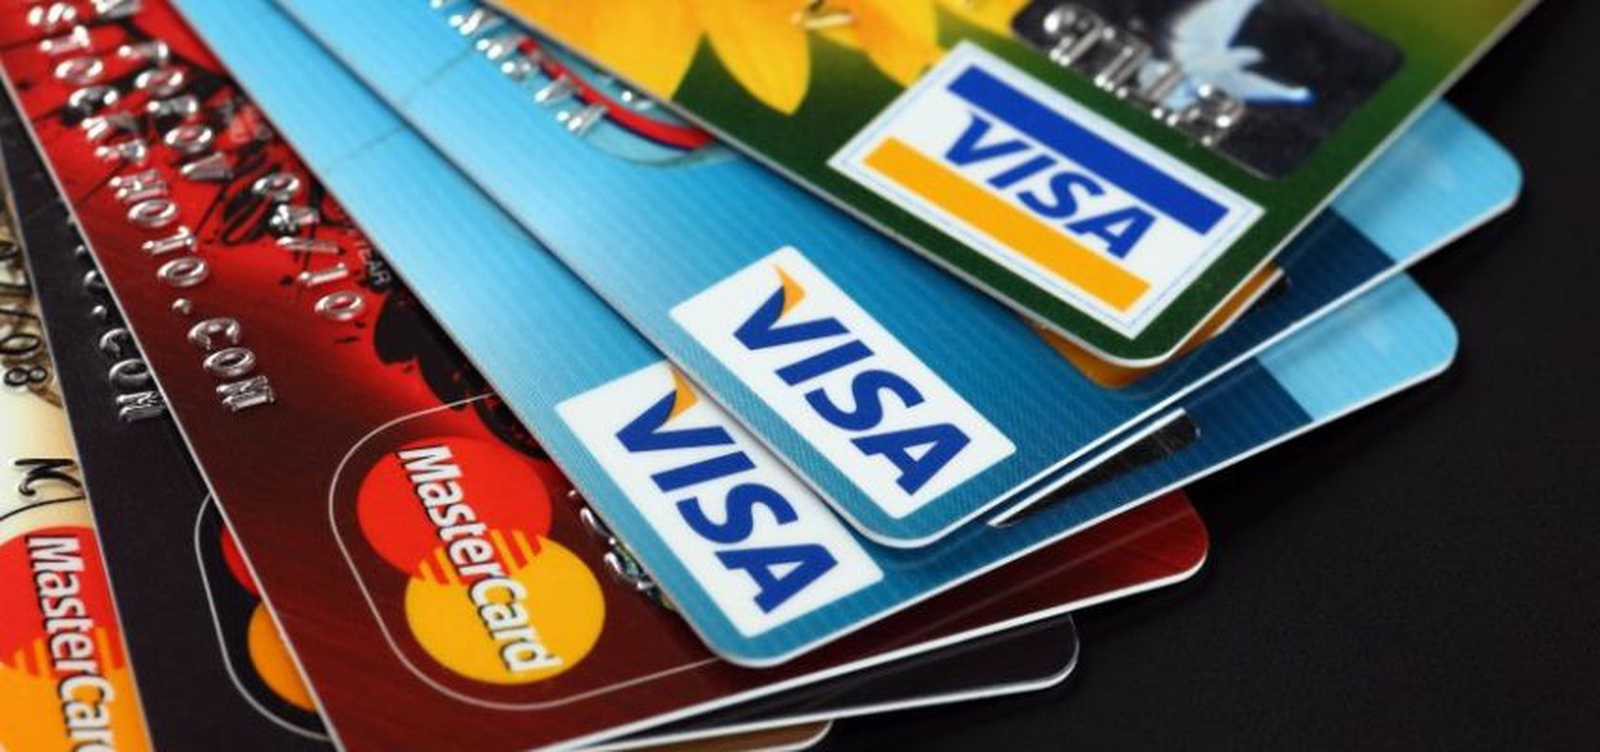 Çoklu Kredi Kartı ile Ödeme Nasıl Yapılır?